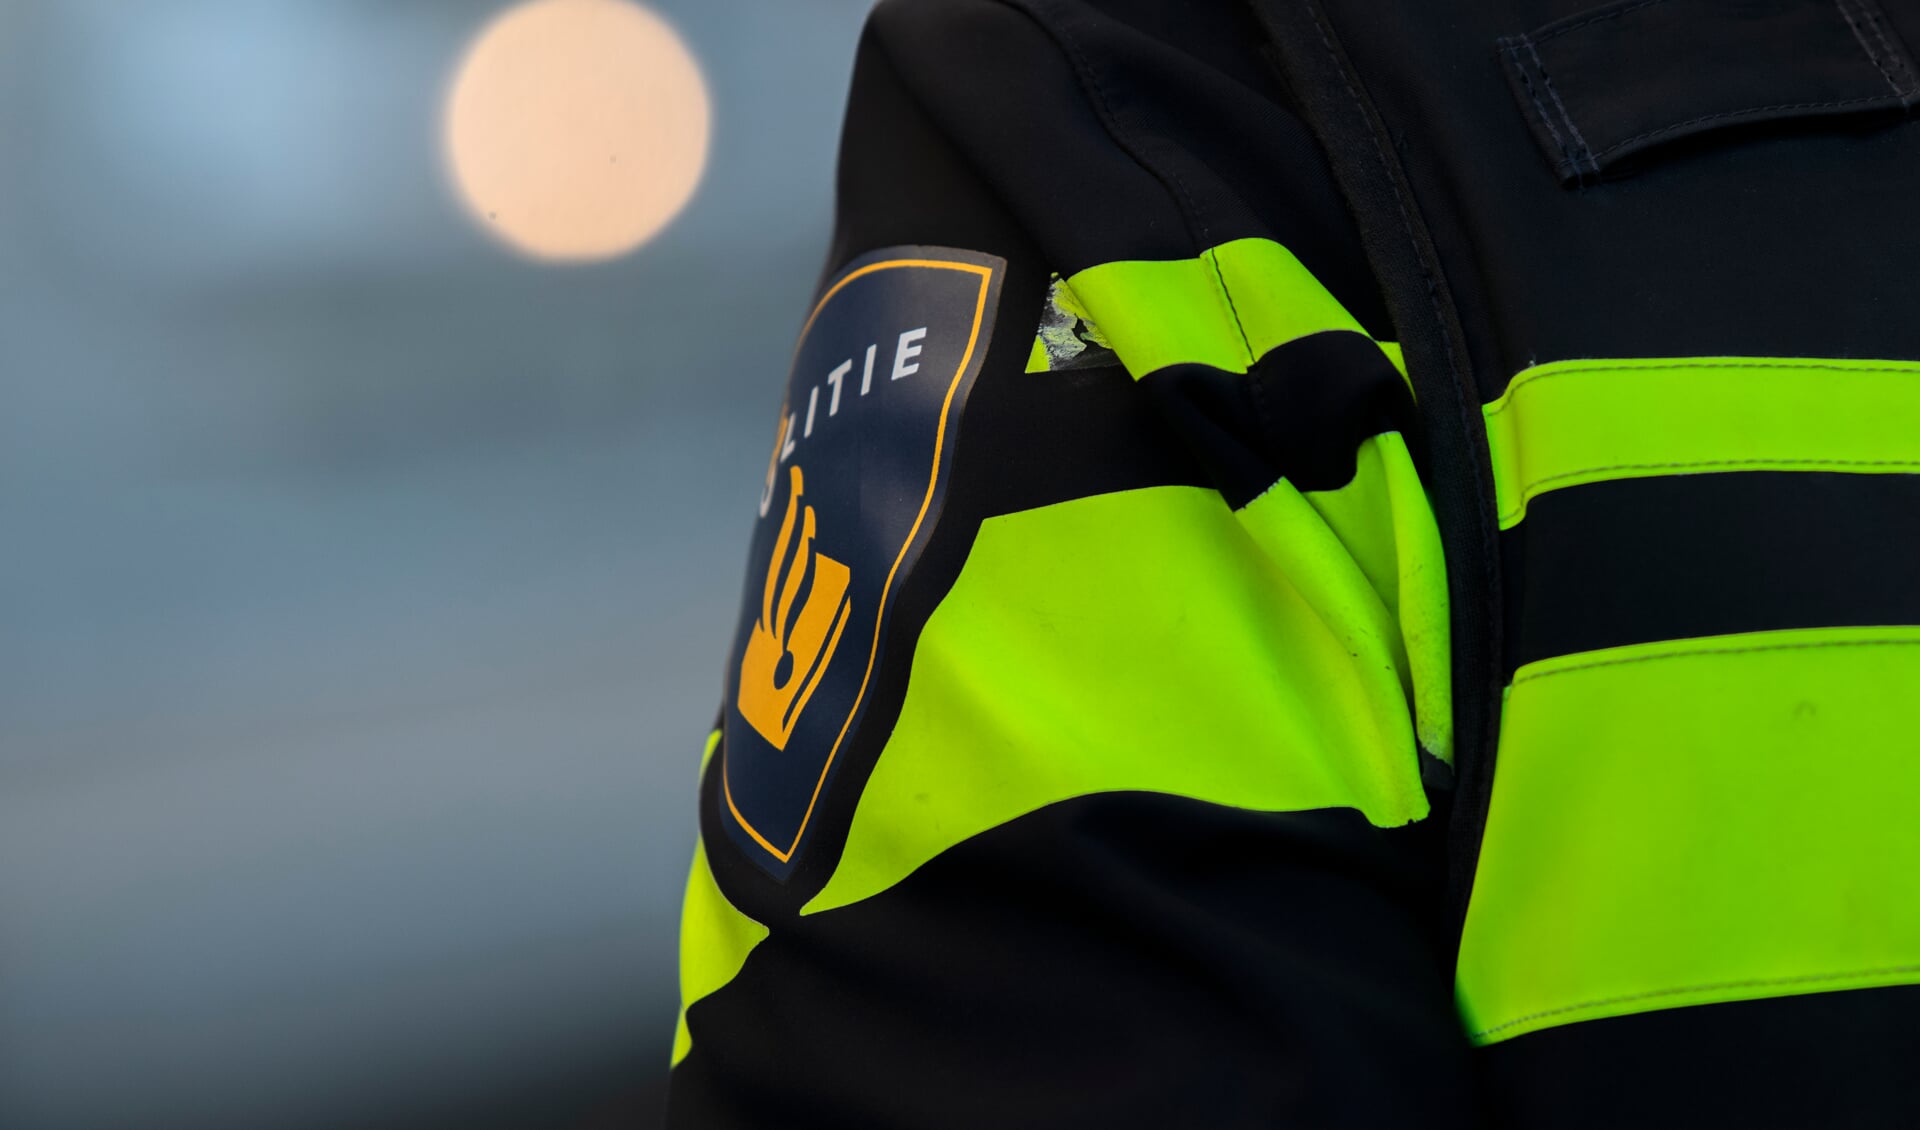 Afgelopen dinsdag 26 september heeft de politie een 17-jarige jongen uit Delft aangehouden voor de explosie die zondag 24 september op het Pad van Troje plaatsvond.  